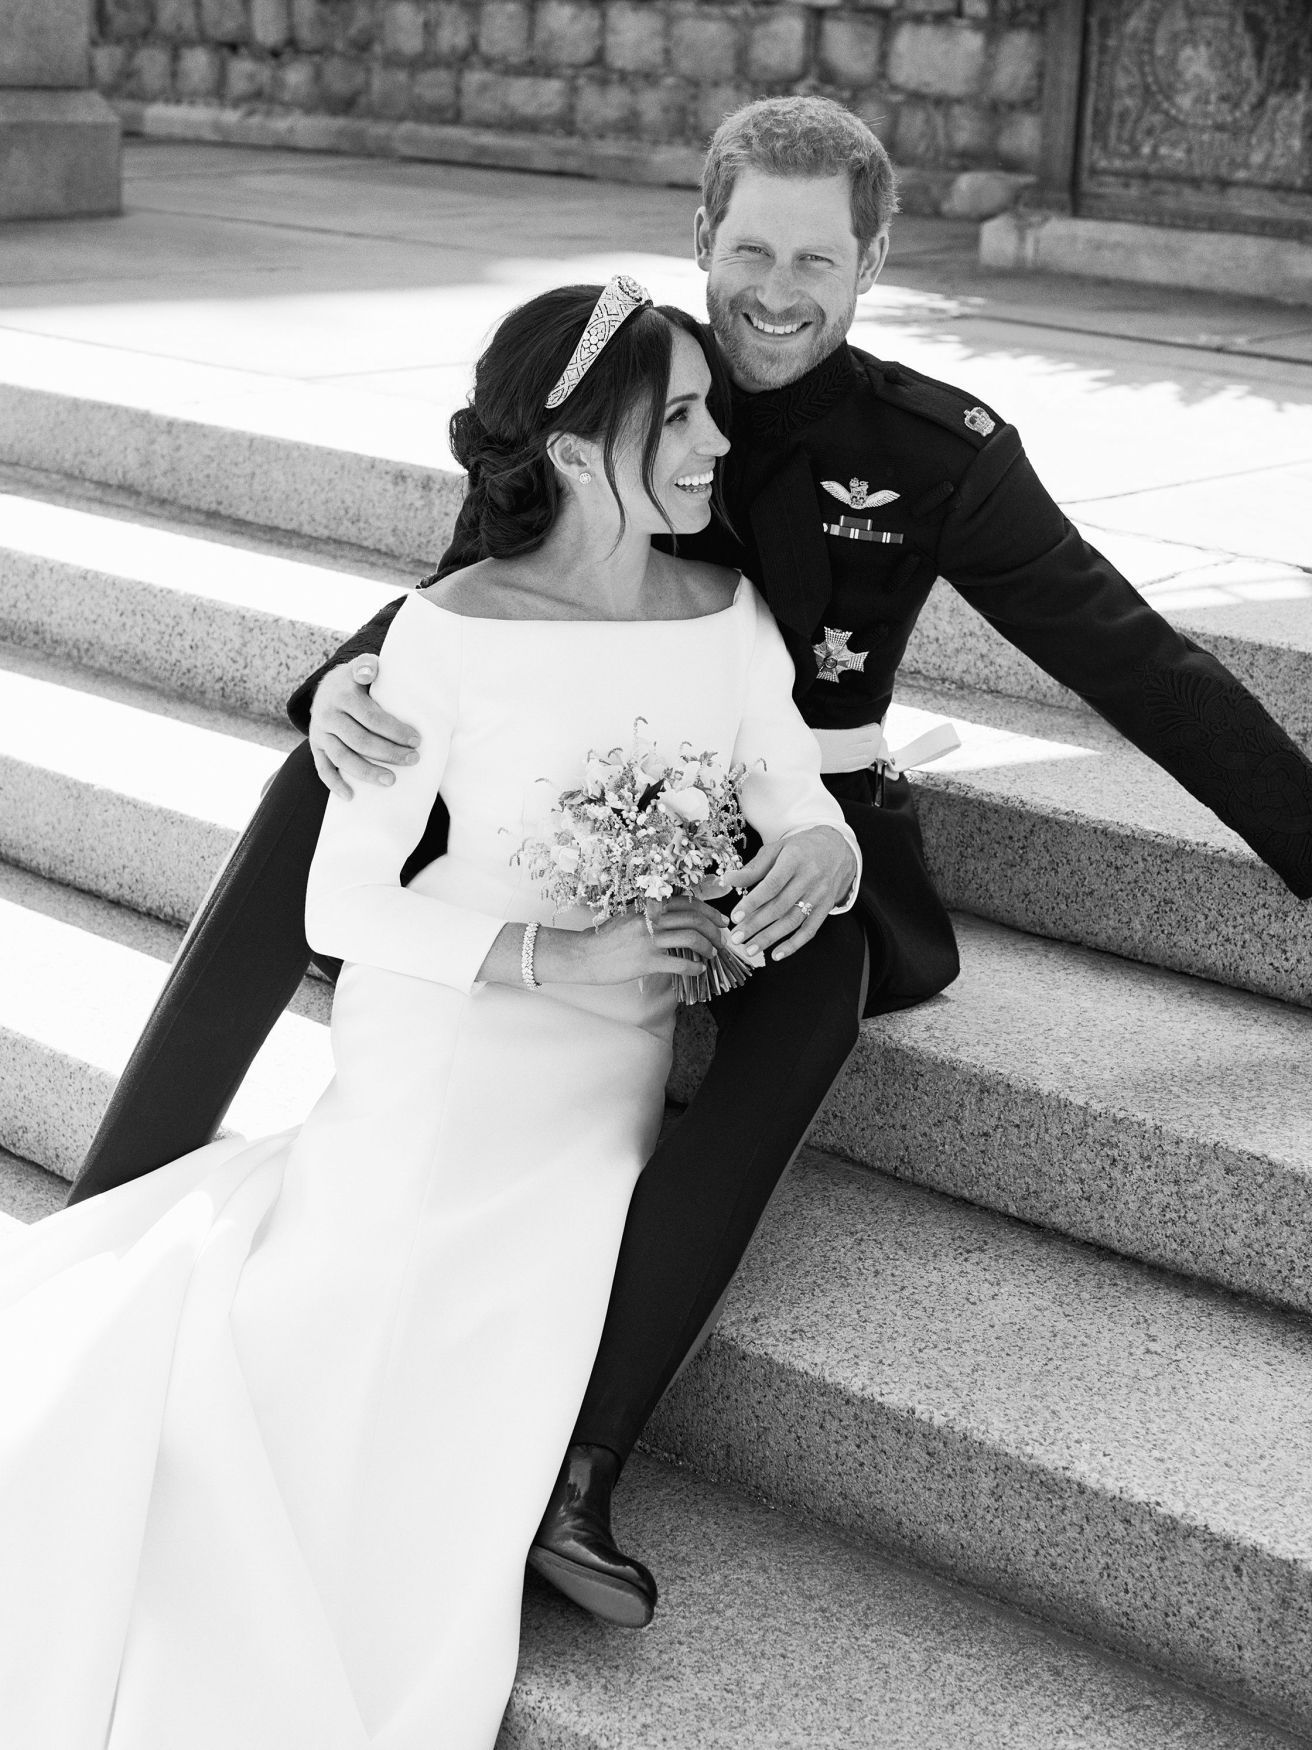 Fotogalerie / Královská svatba připomenutí / Oficiální svatební fotografie / Princ Harry a Meghan Merkle / ČTK / 22. 5. 2018 / 7